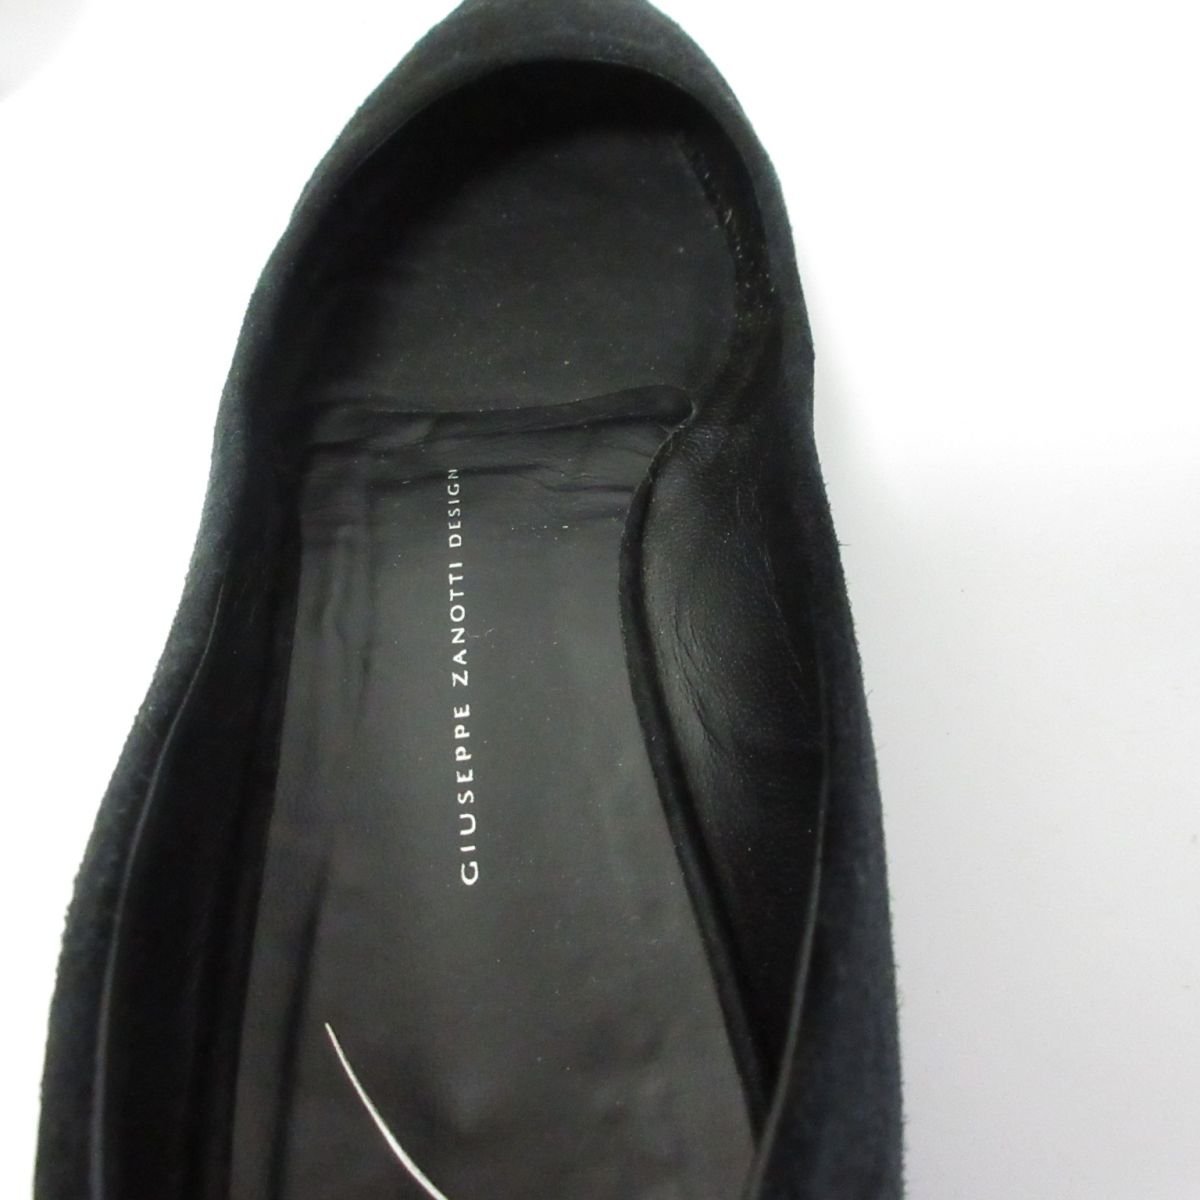  почти прекрасный товар GIUSEPPE ZANOTTI Giuseppe Zanotti замша po Inte dotu лодыжка липучка Flat туфли-лодочки 36 примерно 23cm черный чёрный 